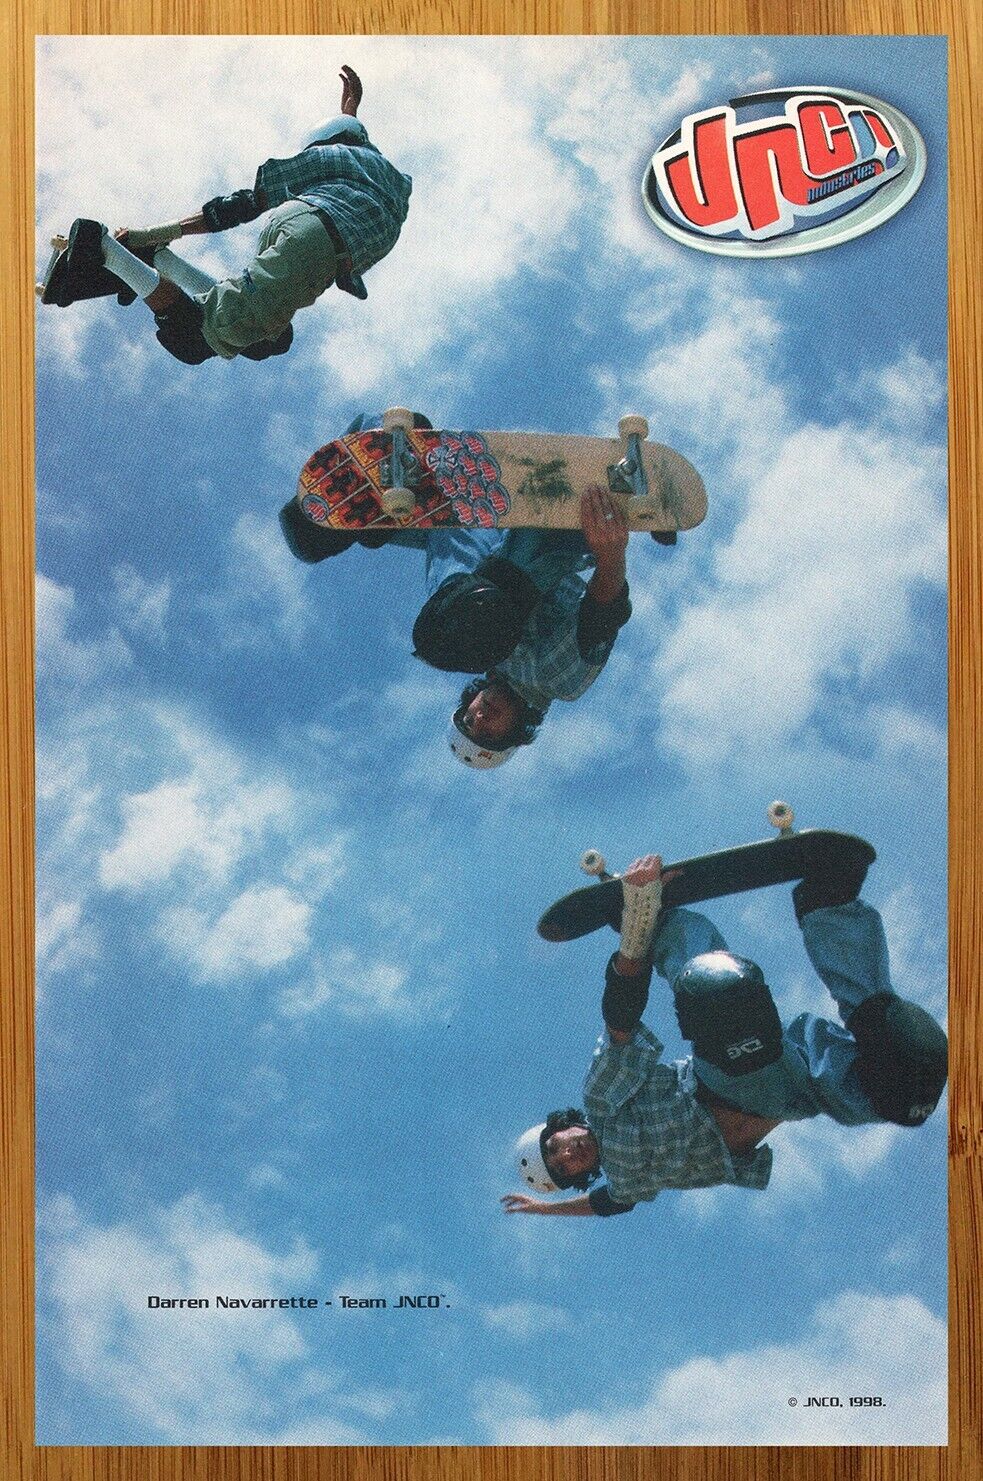 1998 JNCO Clothing Print Ad/Poster Jeans Skateboarding Art Darren Navarrette 90s